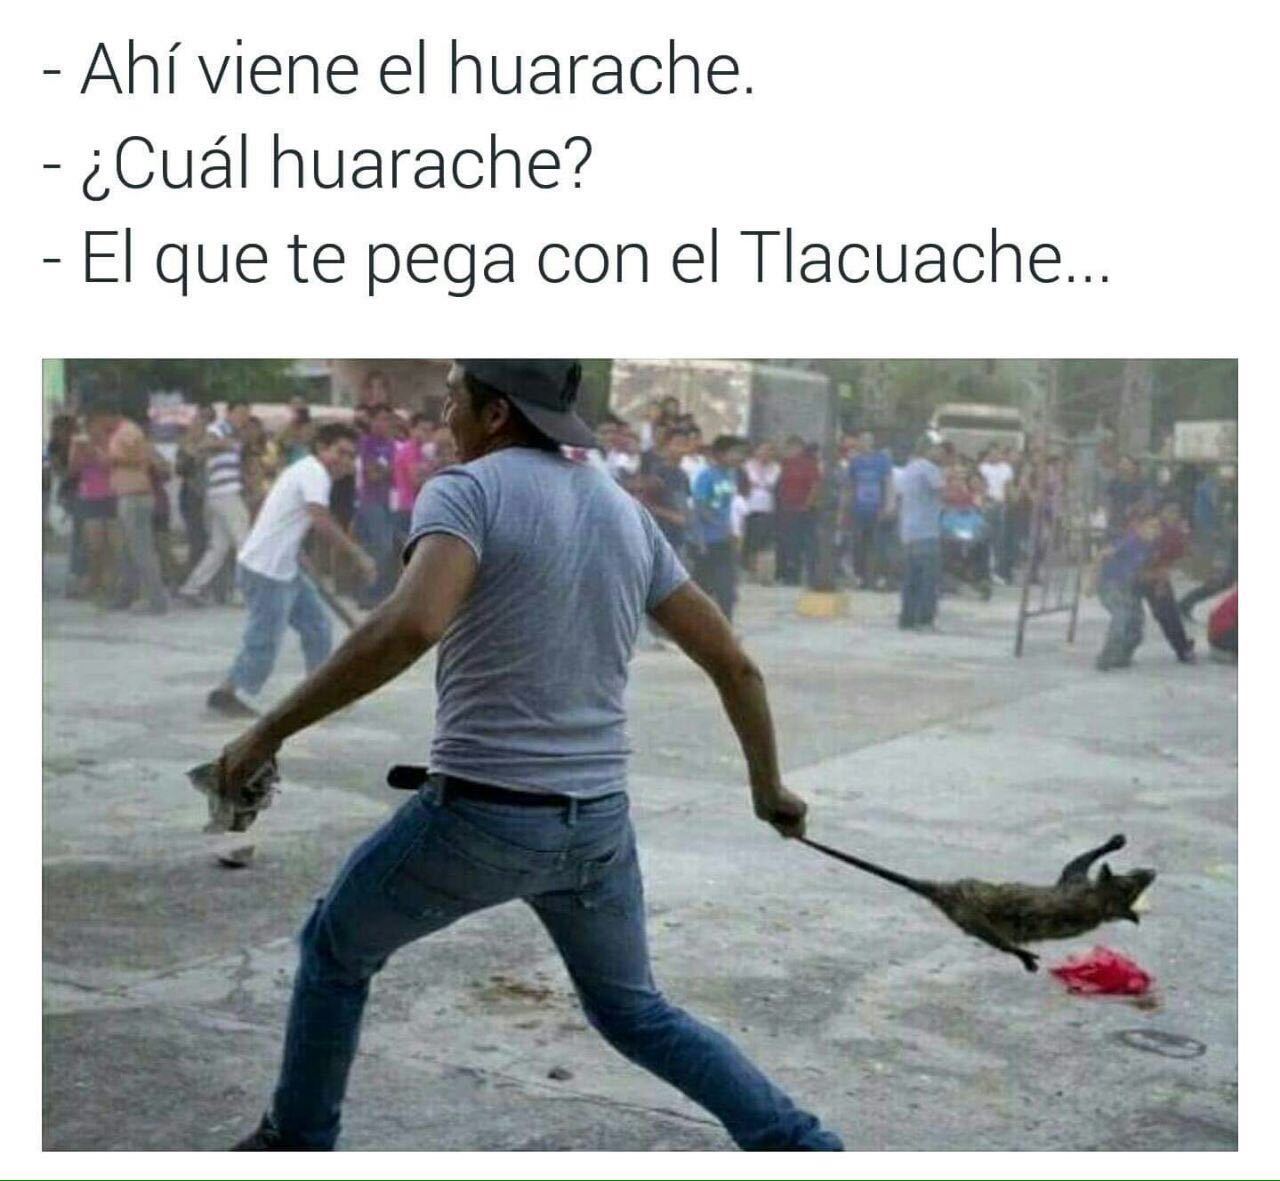 Ese huarache - Meme by Circuncicerdo 